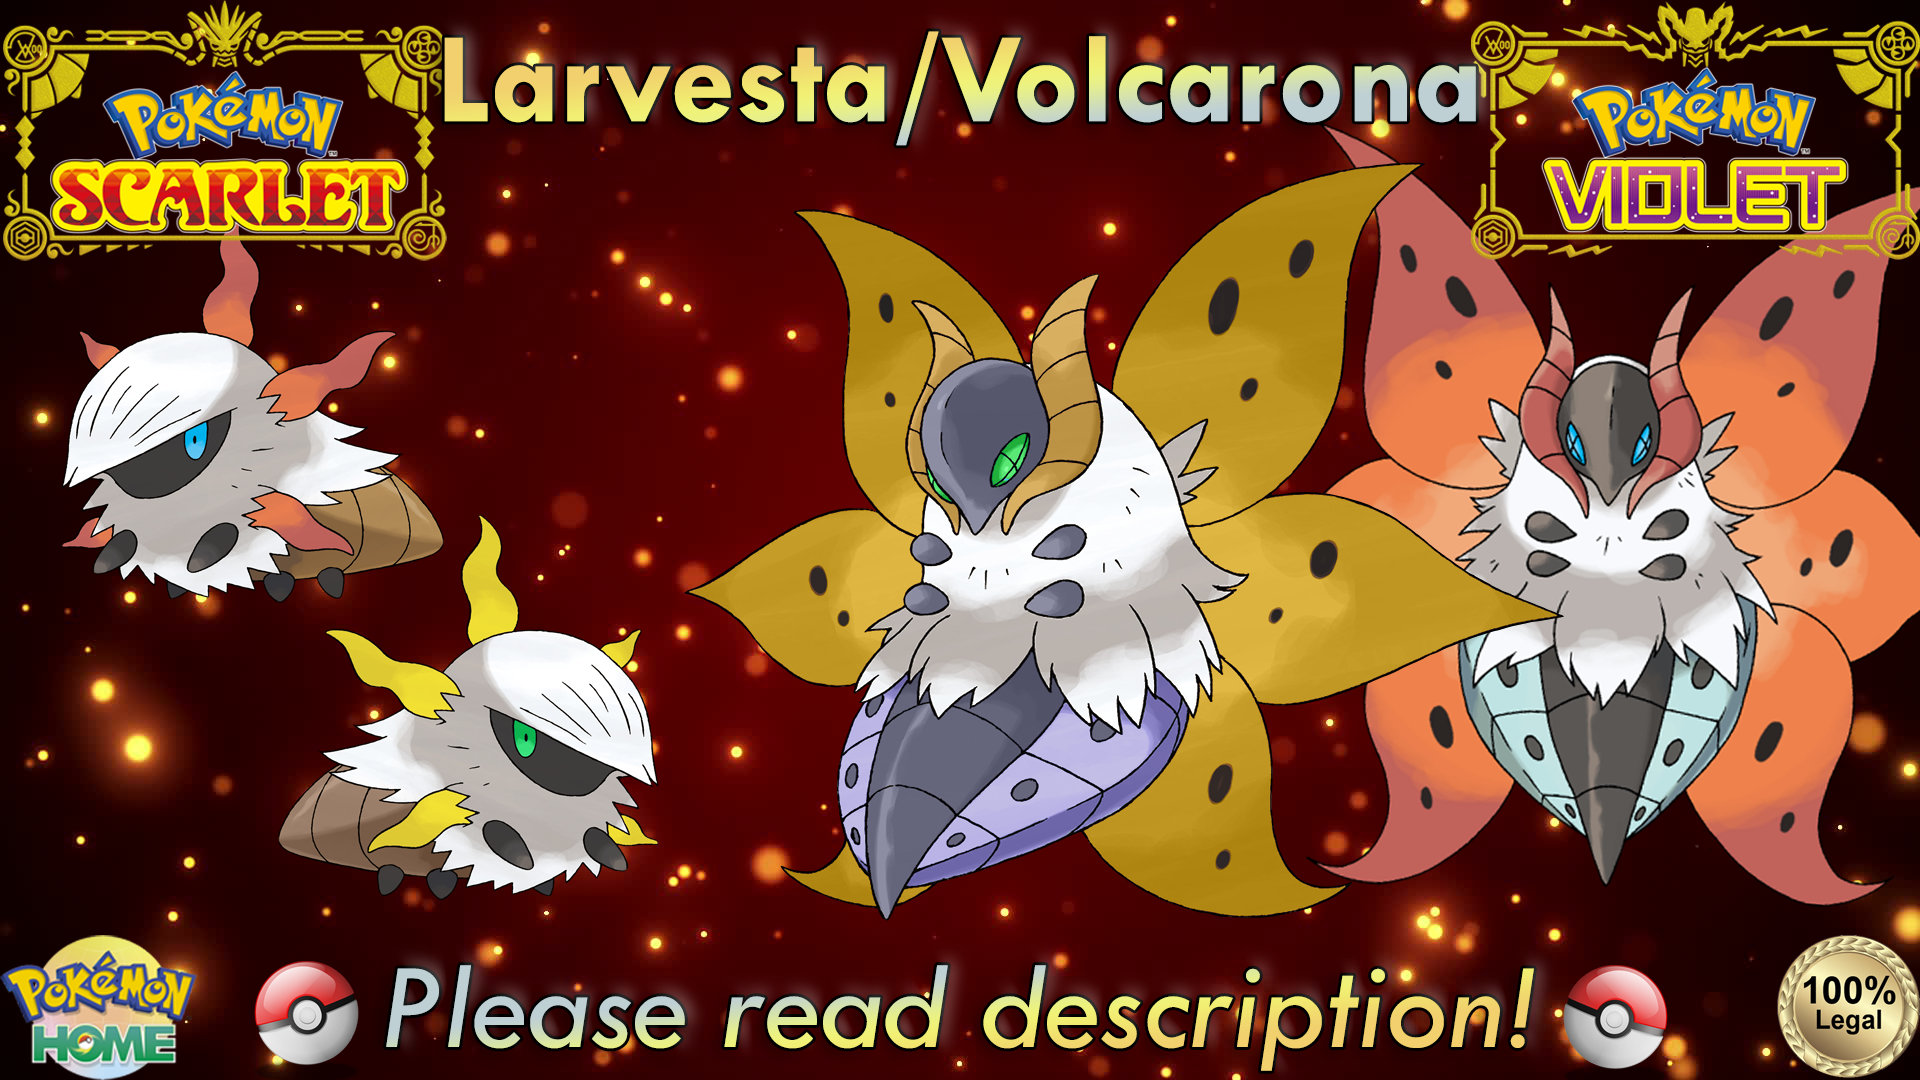 Live] Shiny Voltorb & Electrode in Pokémon Scarlet! 